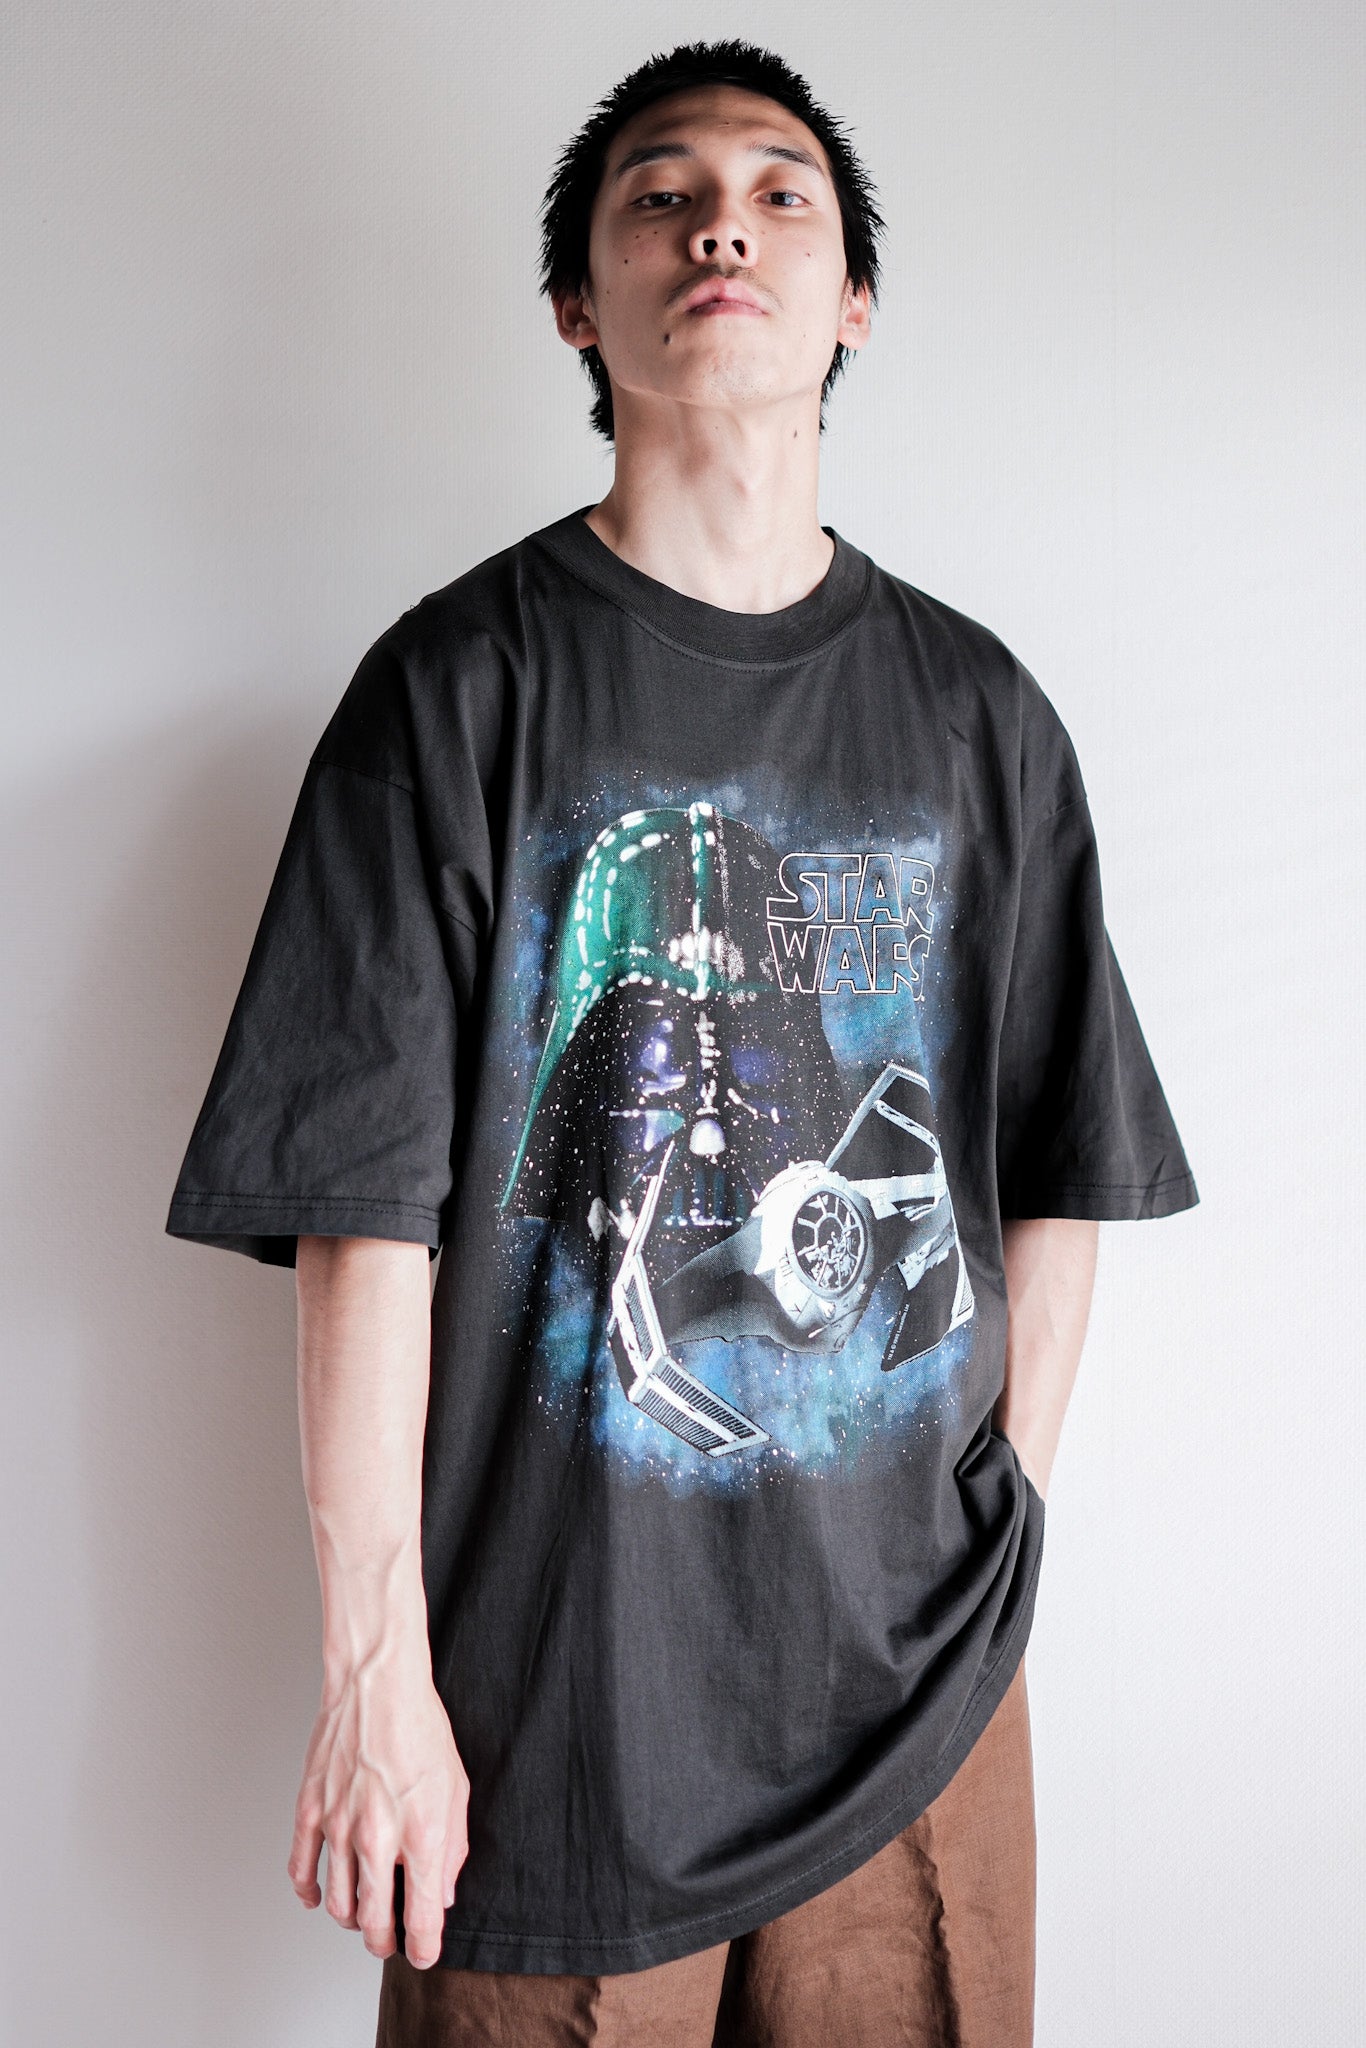 [~ 90 년대] 빈티지 영화 프린트 티셔츠 크기 .xl "스타 워즈"